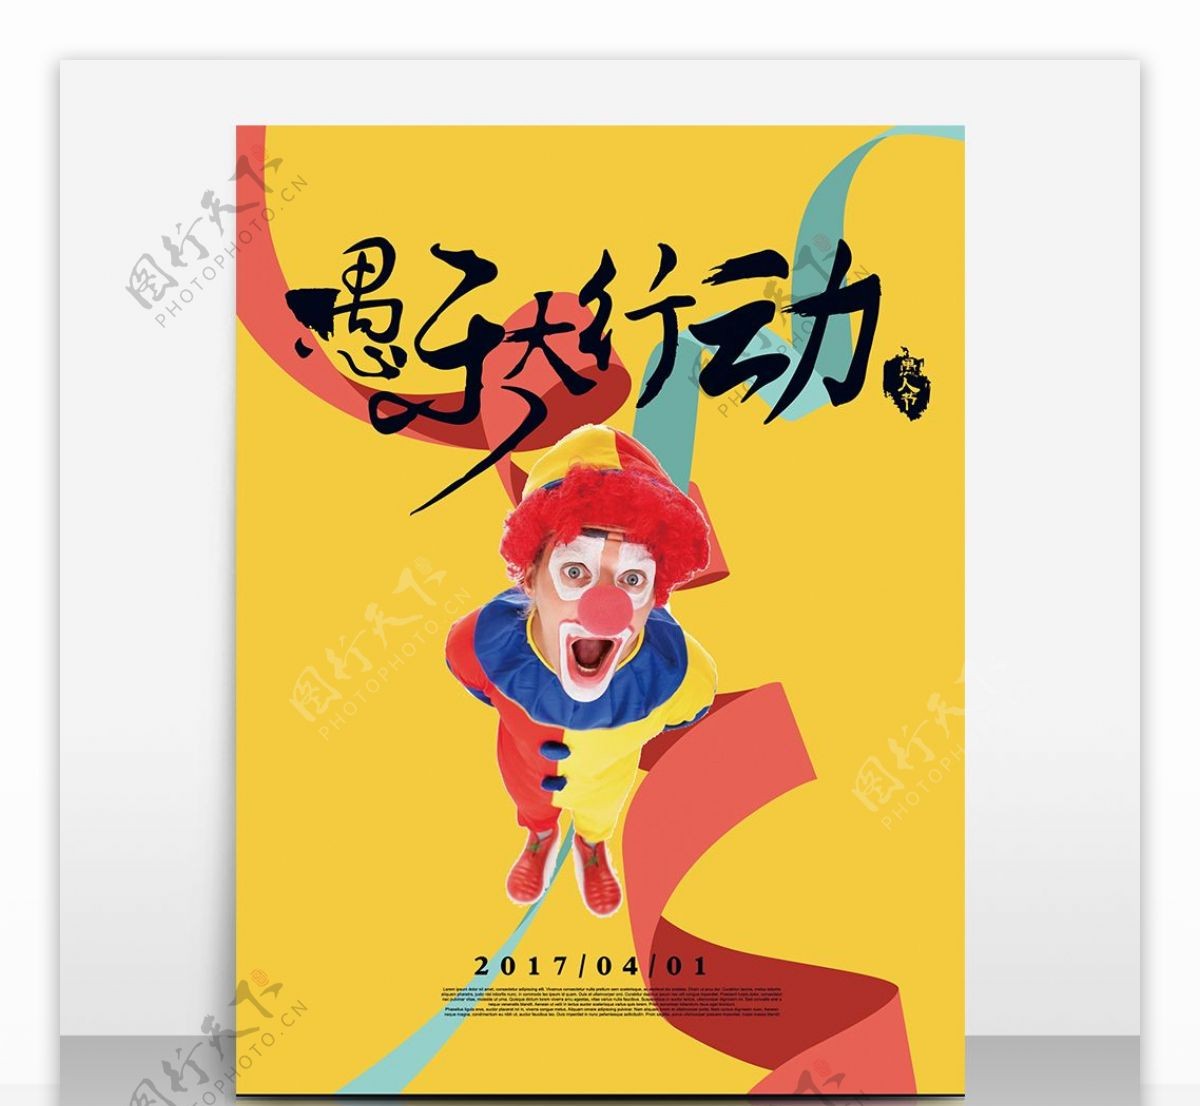 欢乐小丑愚人节海报设计